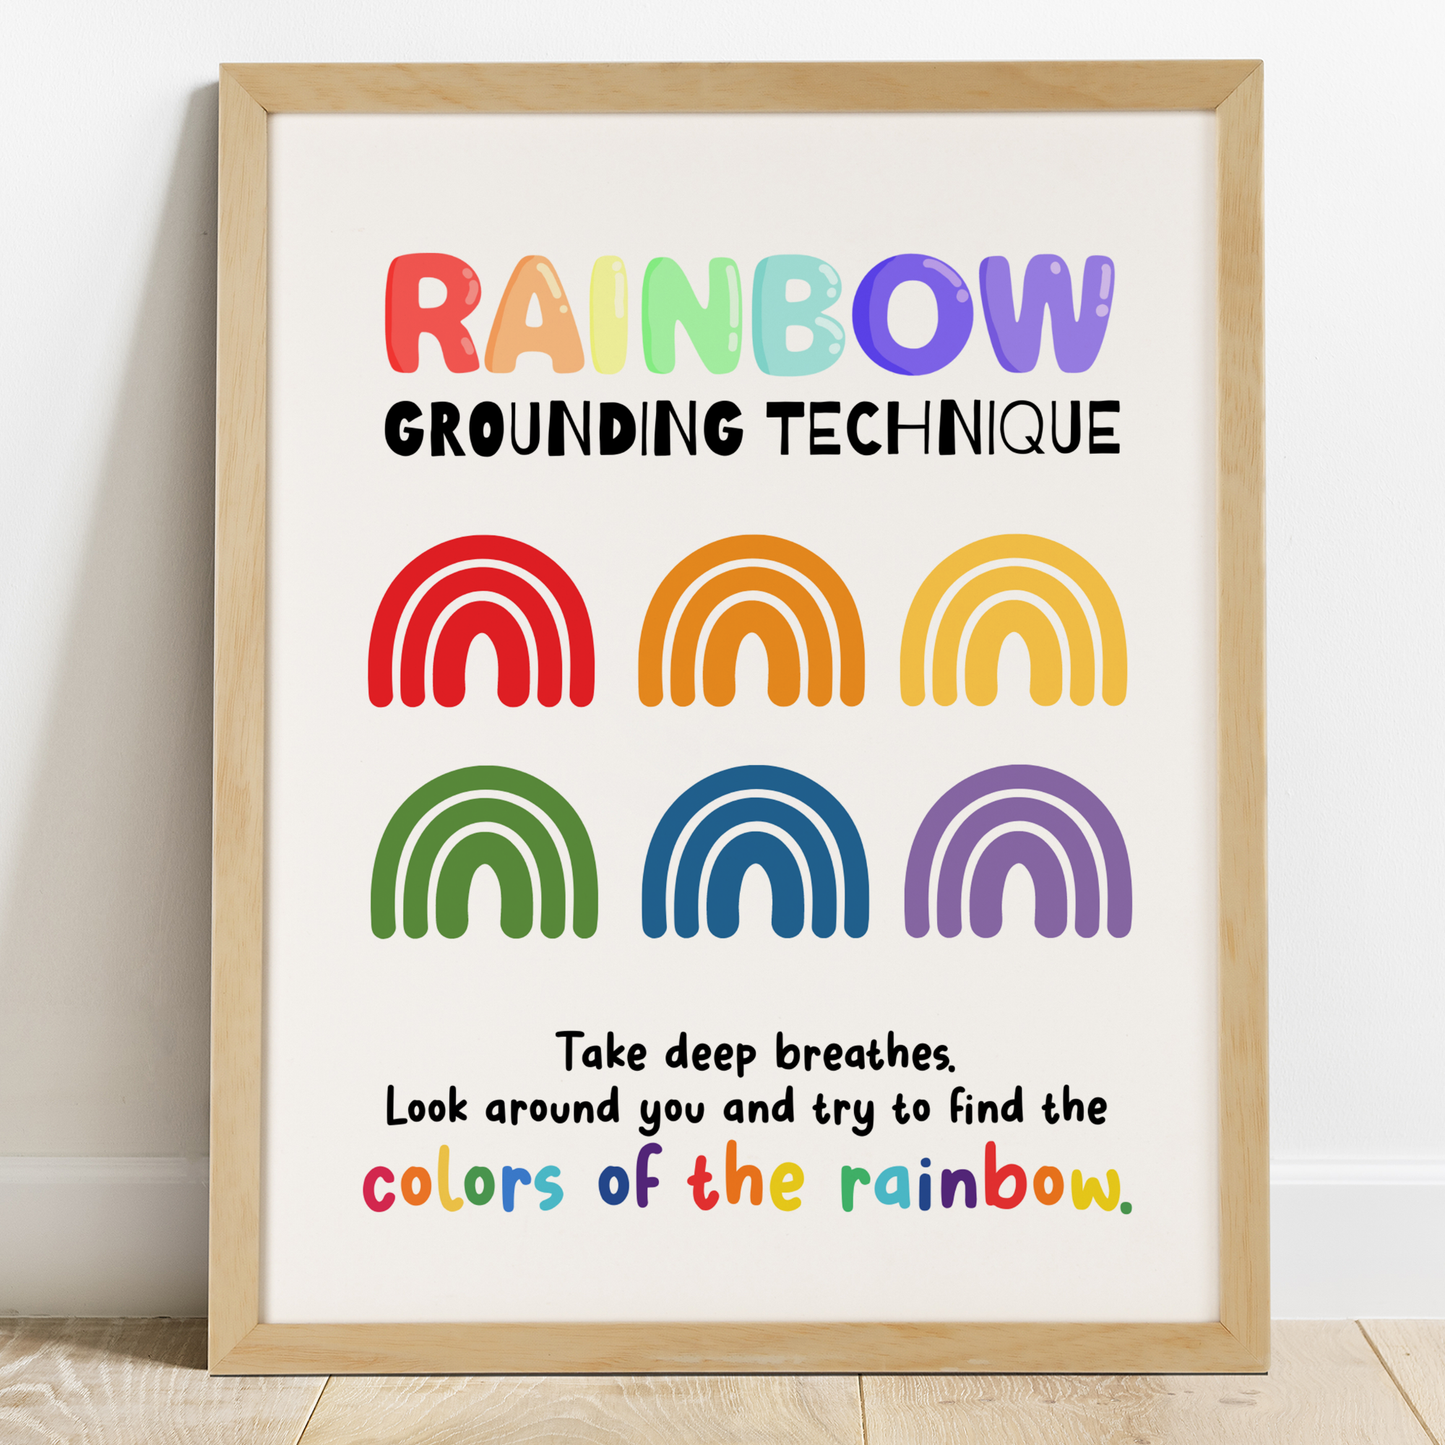 Rainbow Grounding Technique